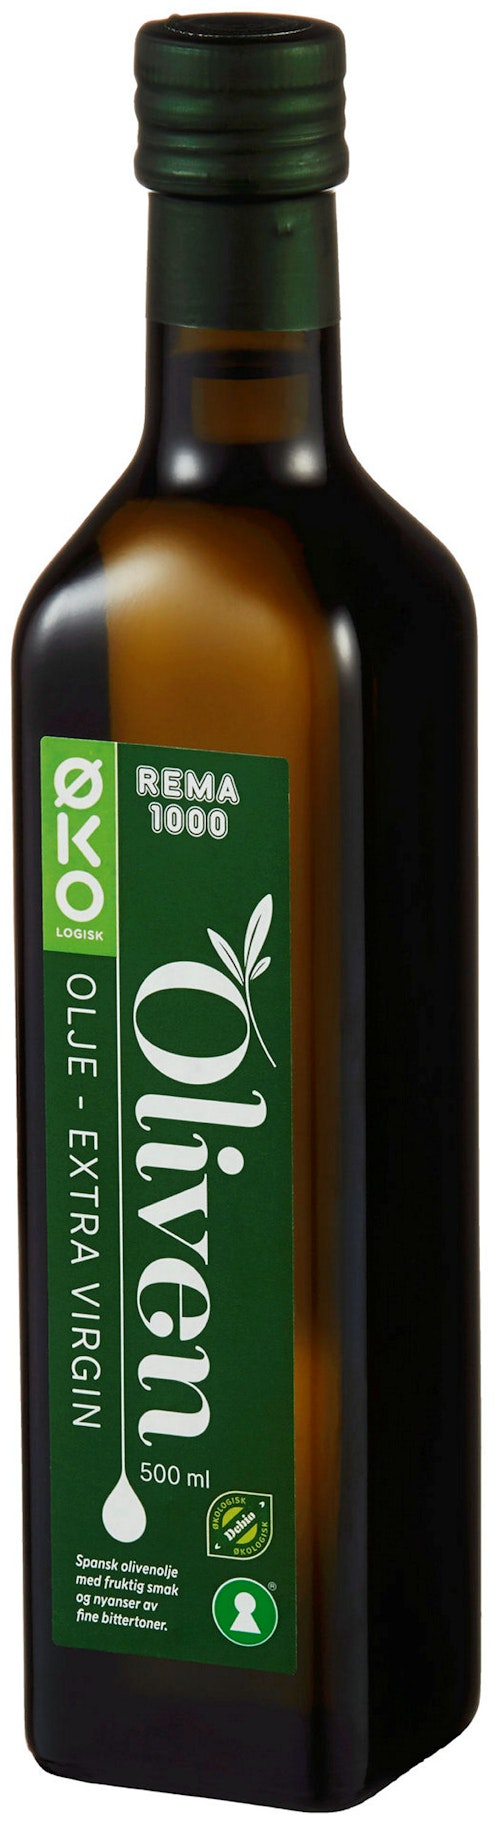 REMA 1000 Olivenolje Extra Virgin Økologisk